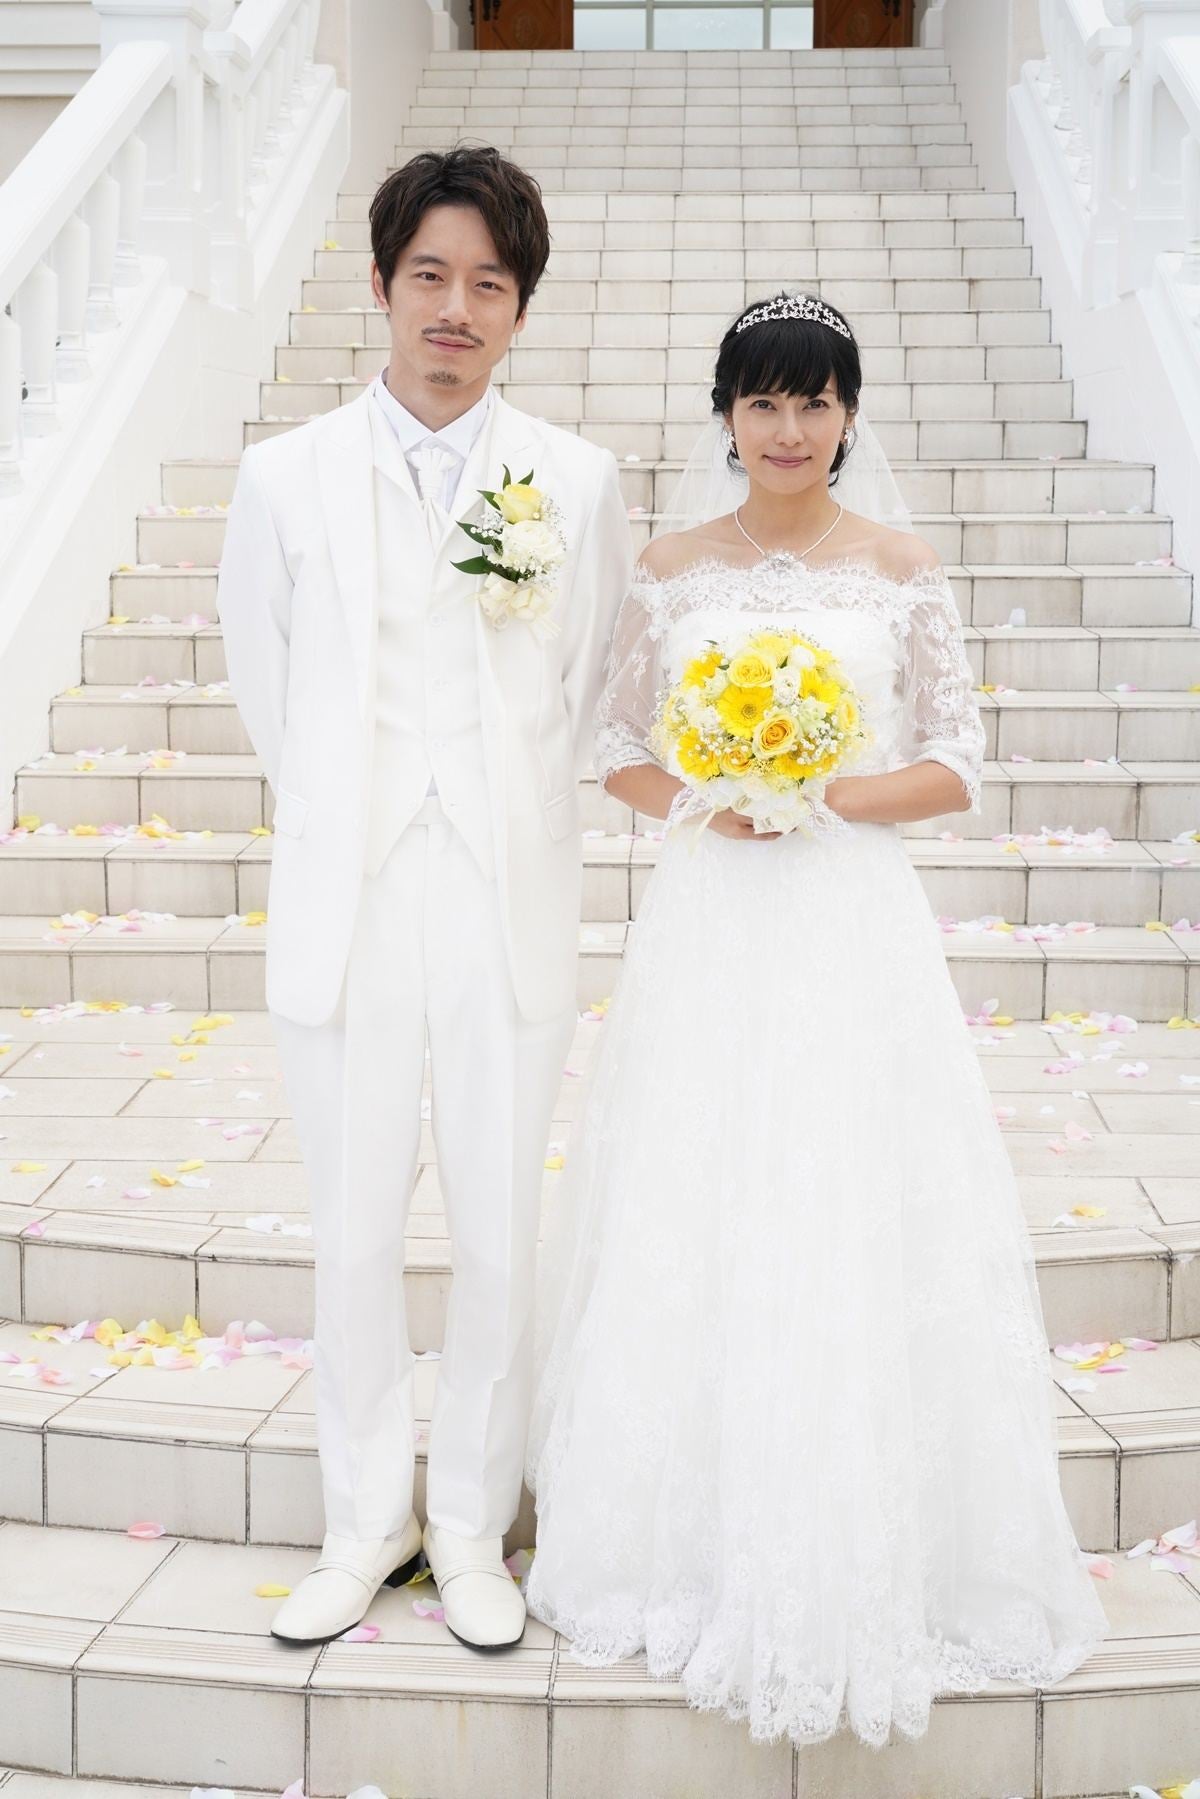 柴咲コウ ウエディングドレス姿披露 坂口健太郎と結婚式シーン マイナビニュース